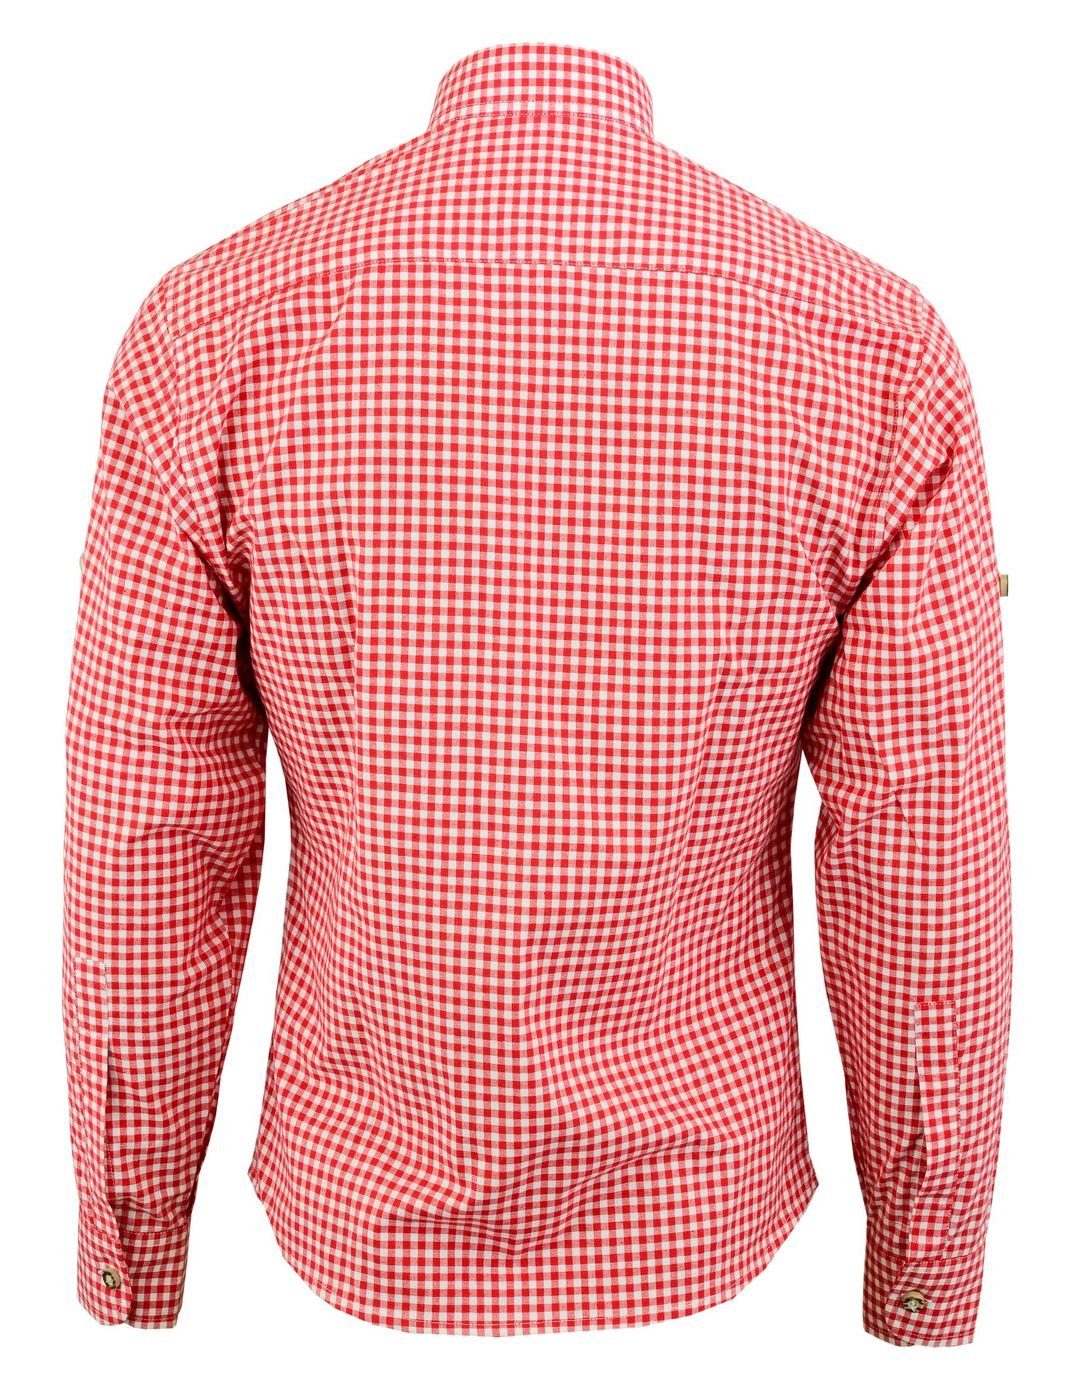 Trachtenlederhose German Trachtenhemd GW1203-EW-SK Edelweiß-Stickerei für Rot Trachtenhemd mit stehkragen Wear